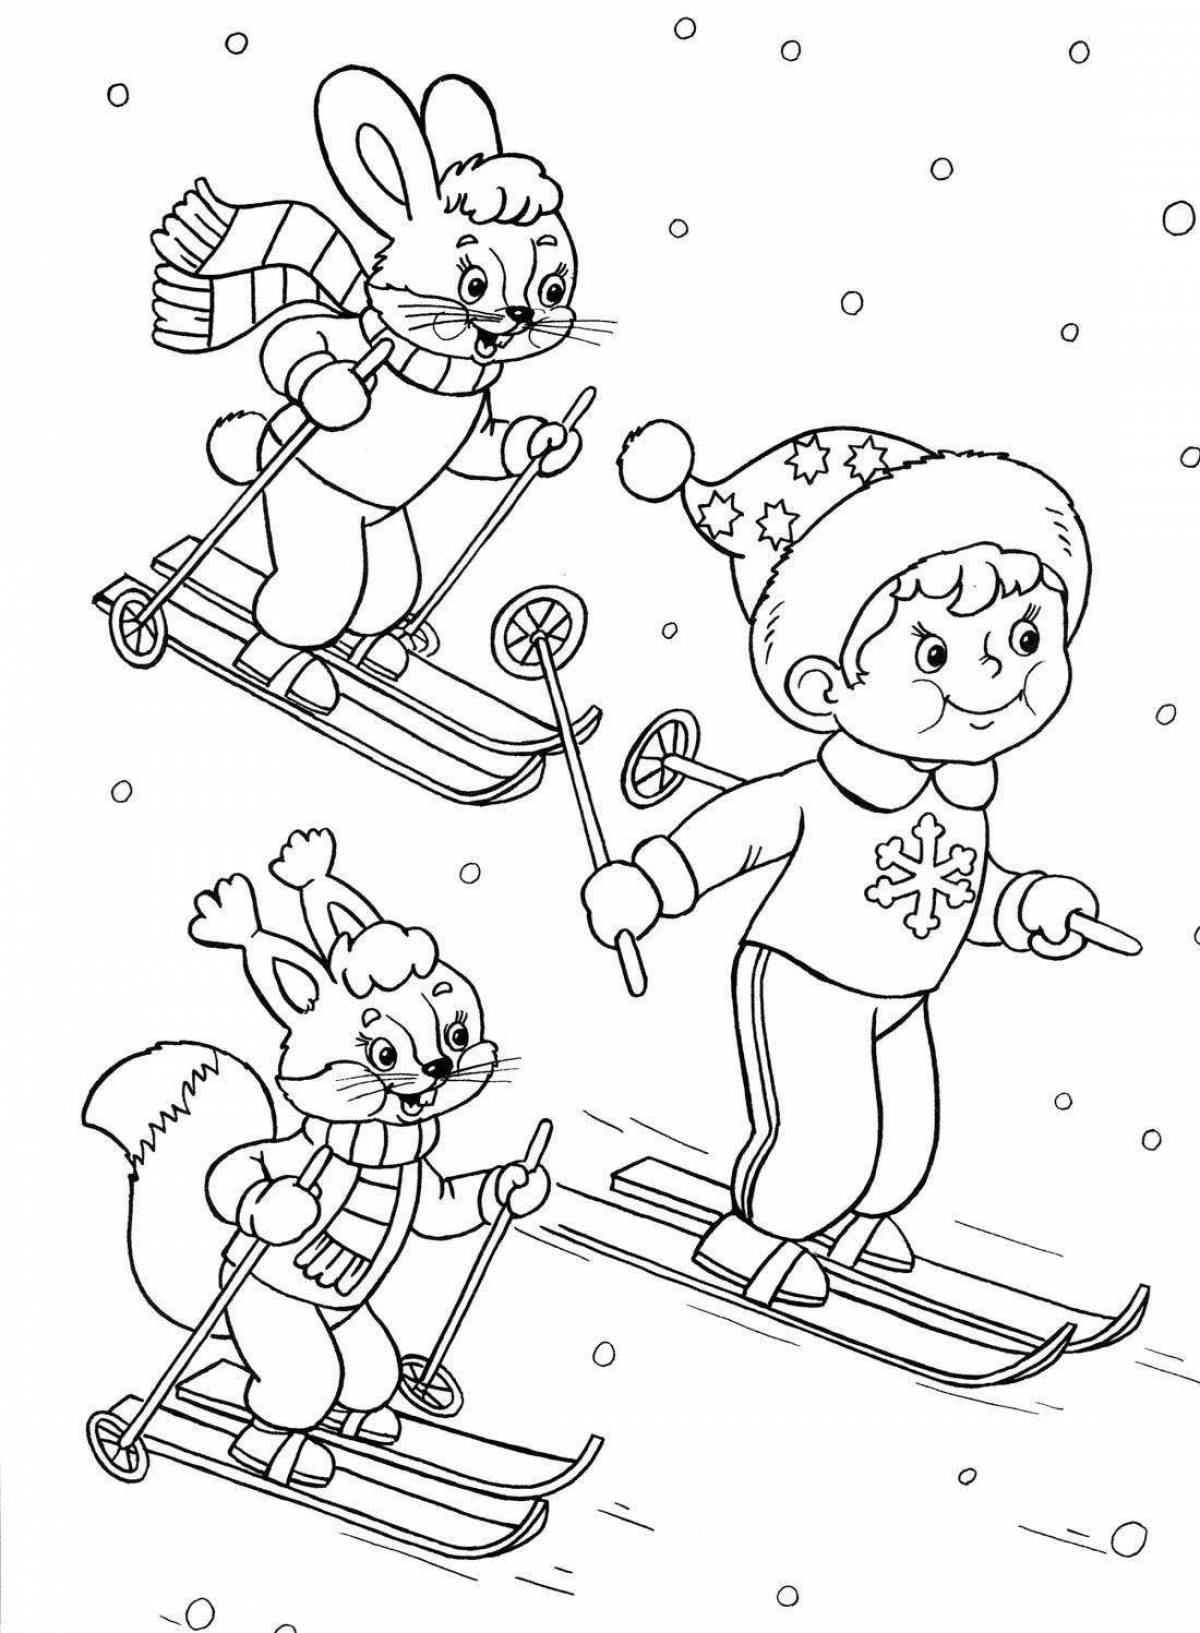 Красочная картинка с зимними видами спорта для детей в детском саду